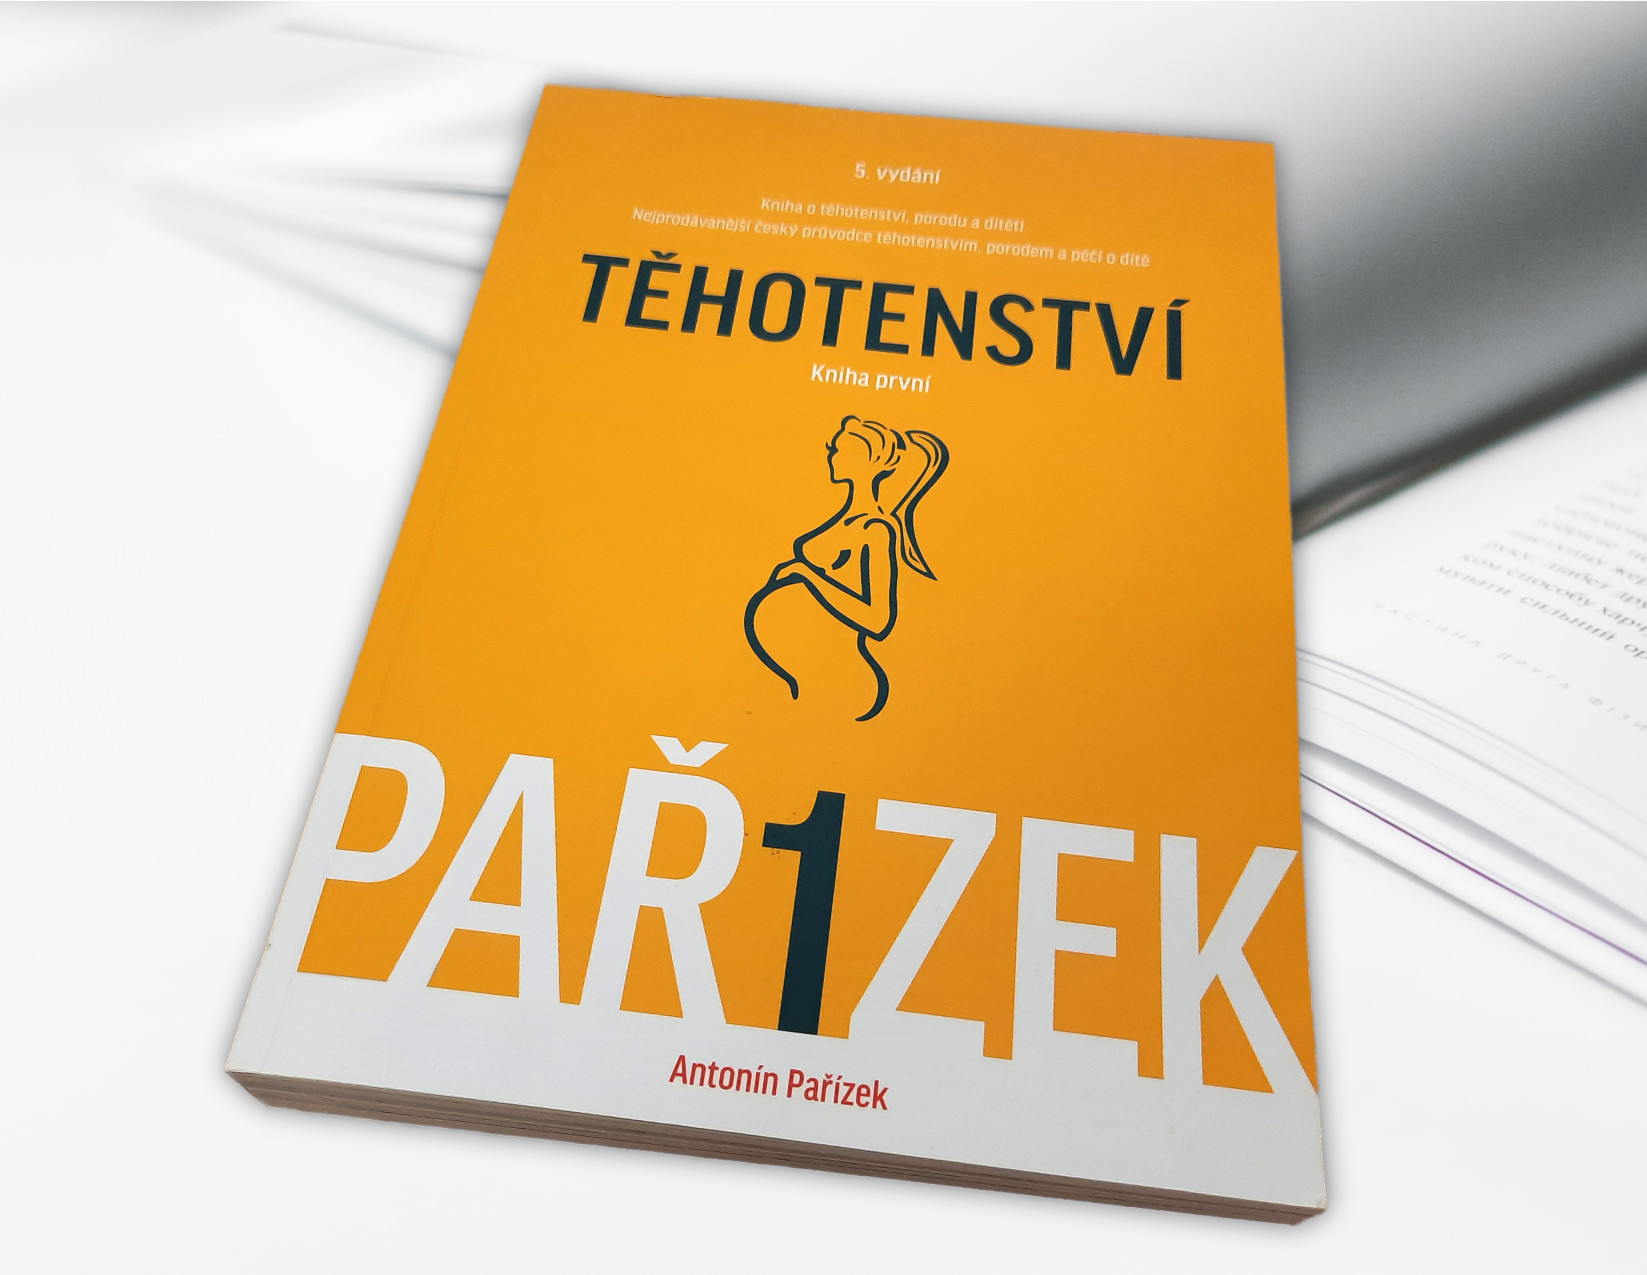 Těhotenství od Antonína Pařízka patří mezi nejpopulárnější knížky na toto téma u nás. Pozornost je v ní věnována i zácpě a dalším souvisejícím potížím.